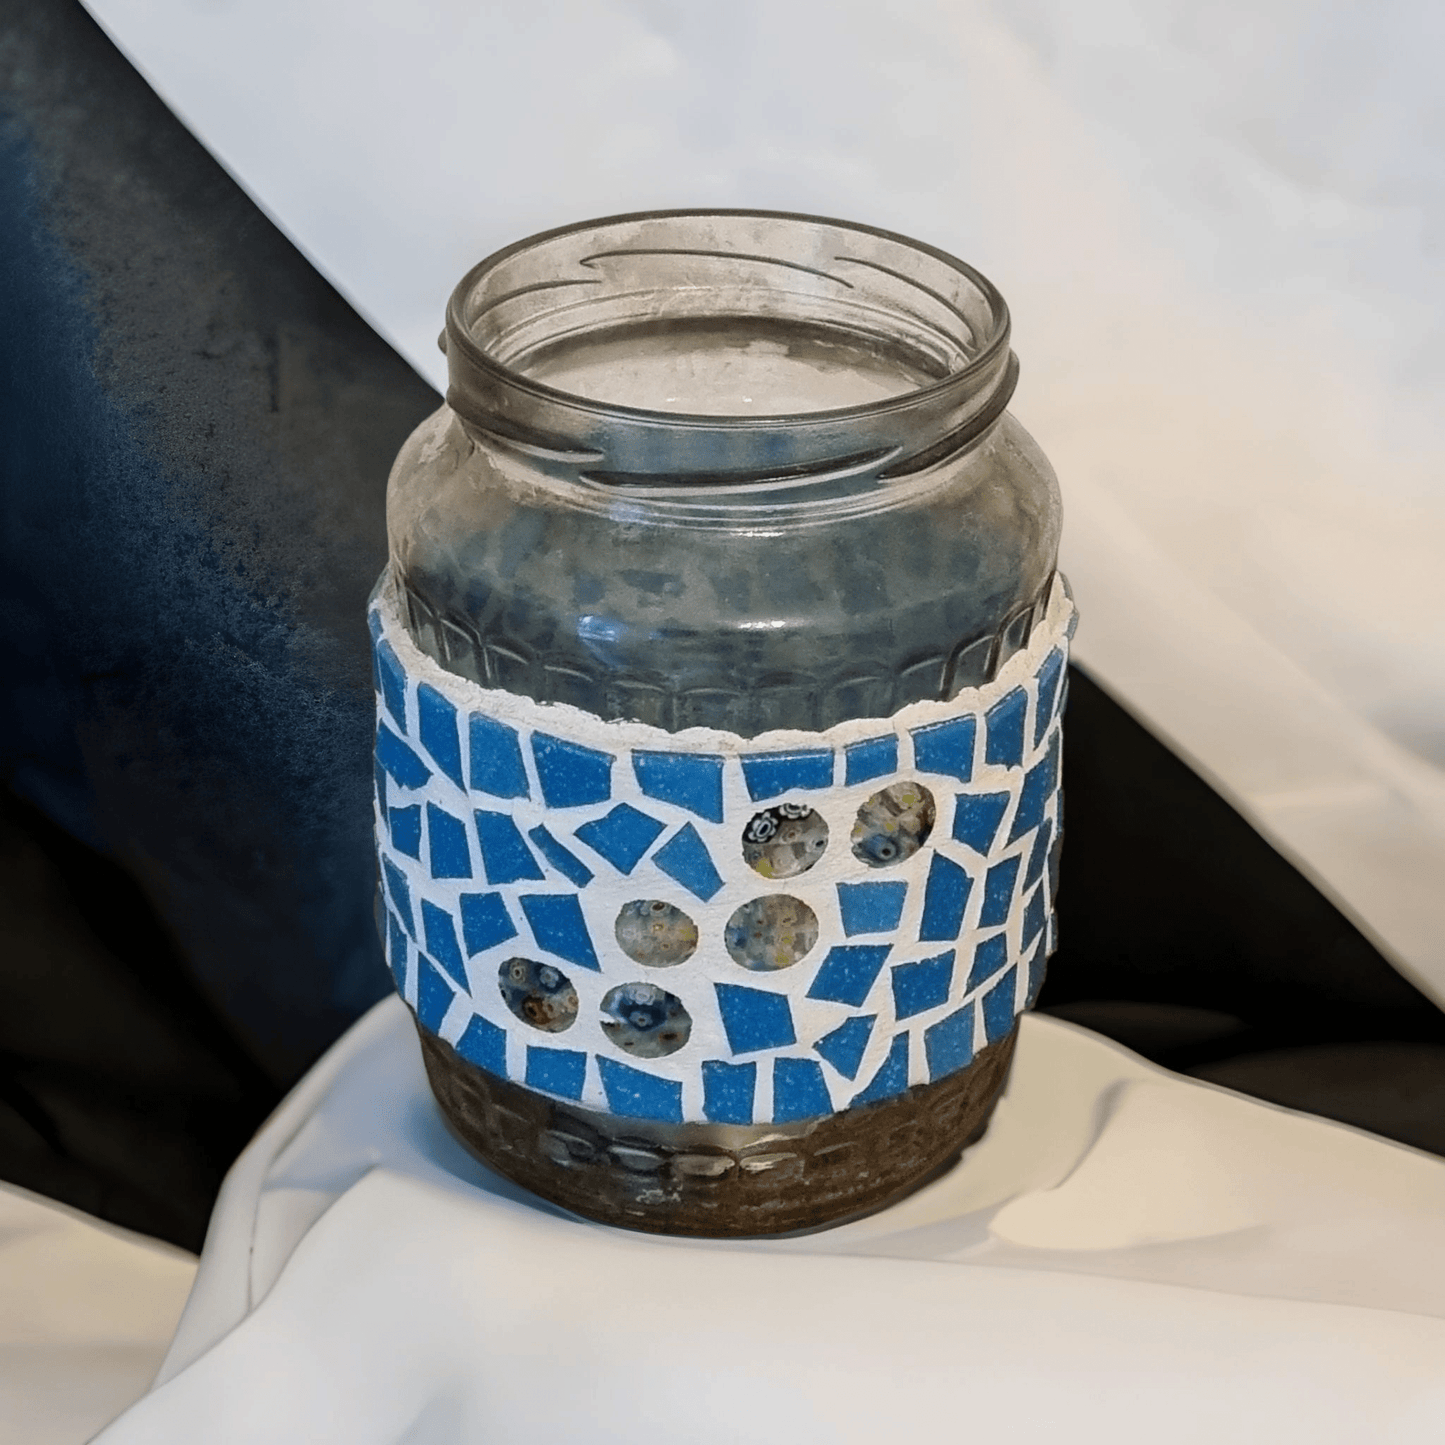 Mosaik Windlicht türkis 13 cm hoch - Aus Alt mach Neu - Mosaikkasten aus alt mach neu blau